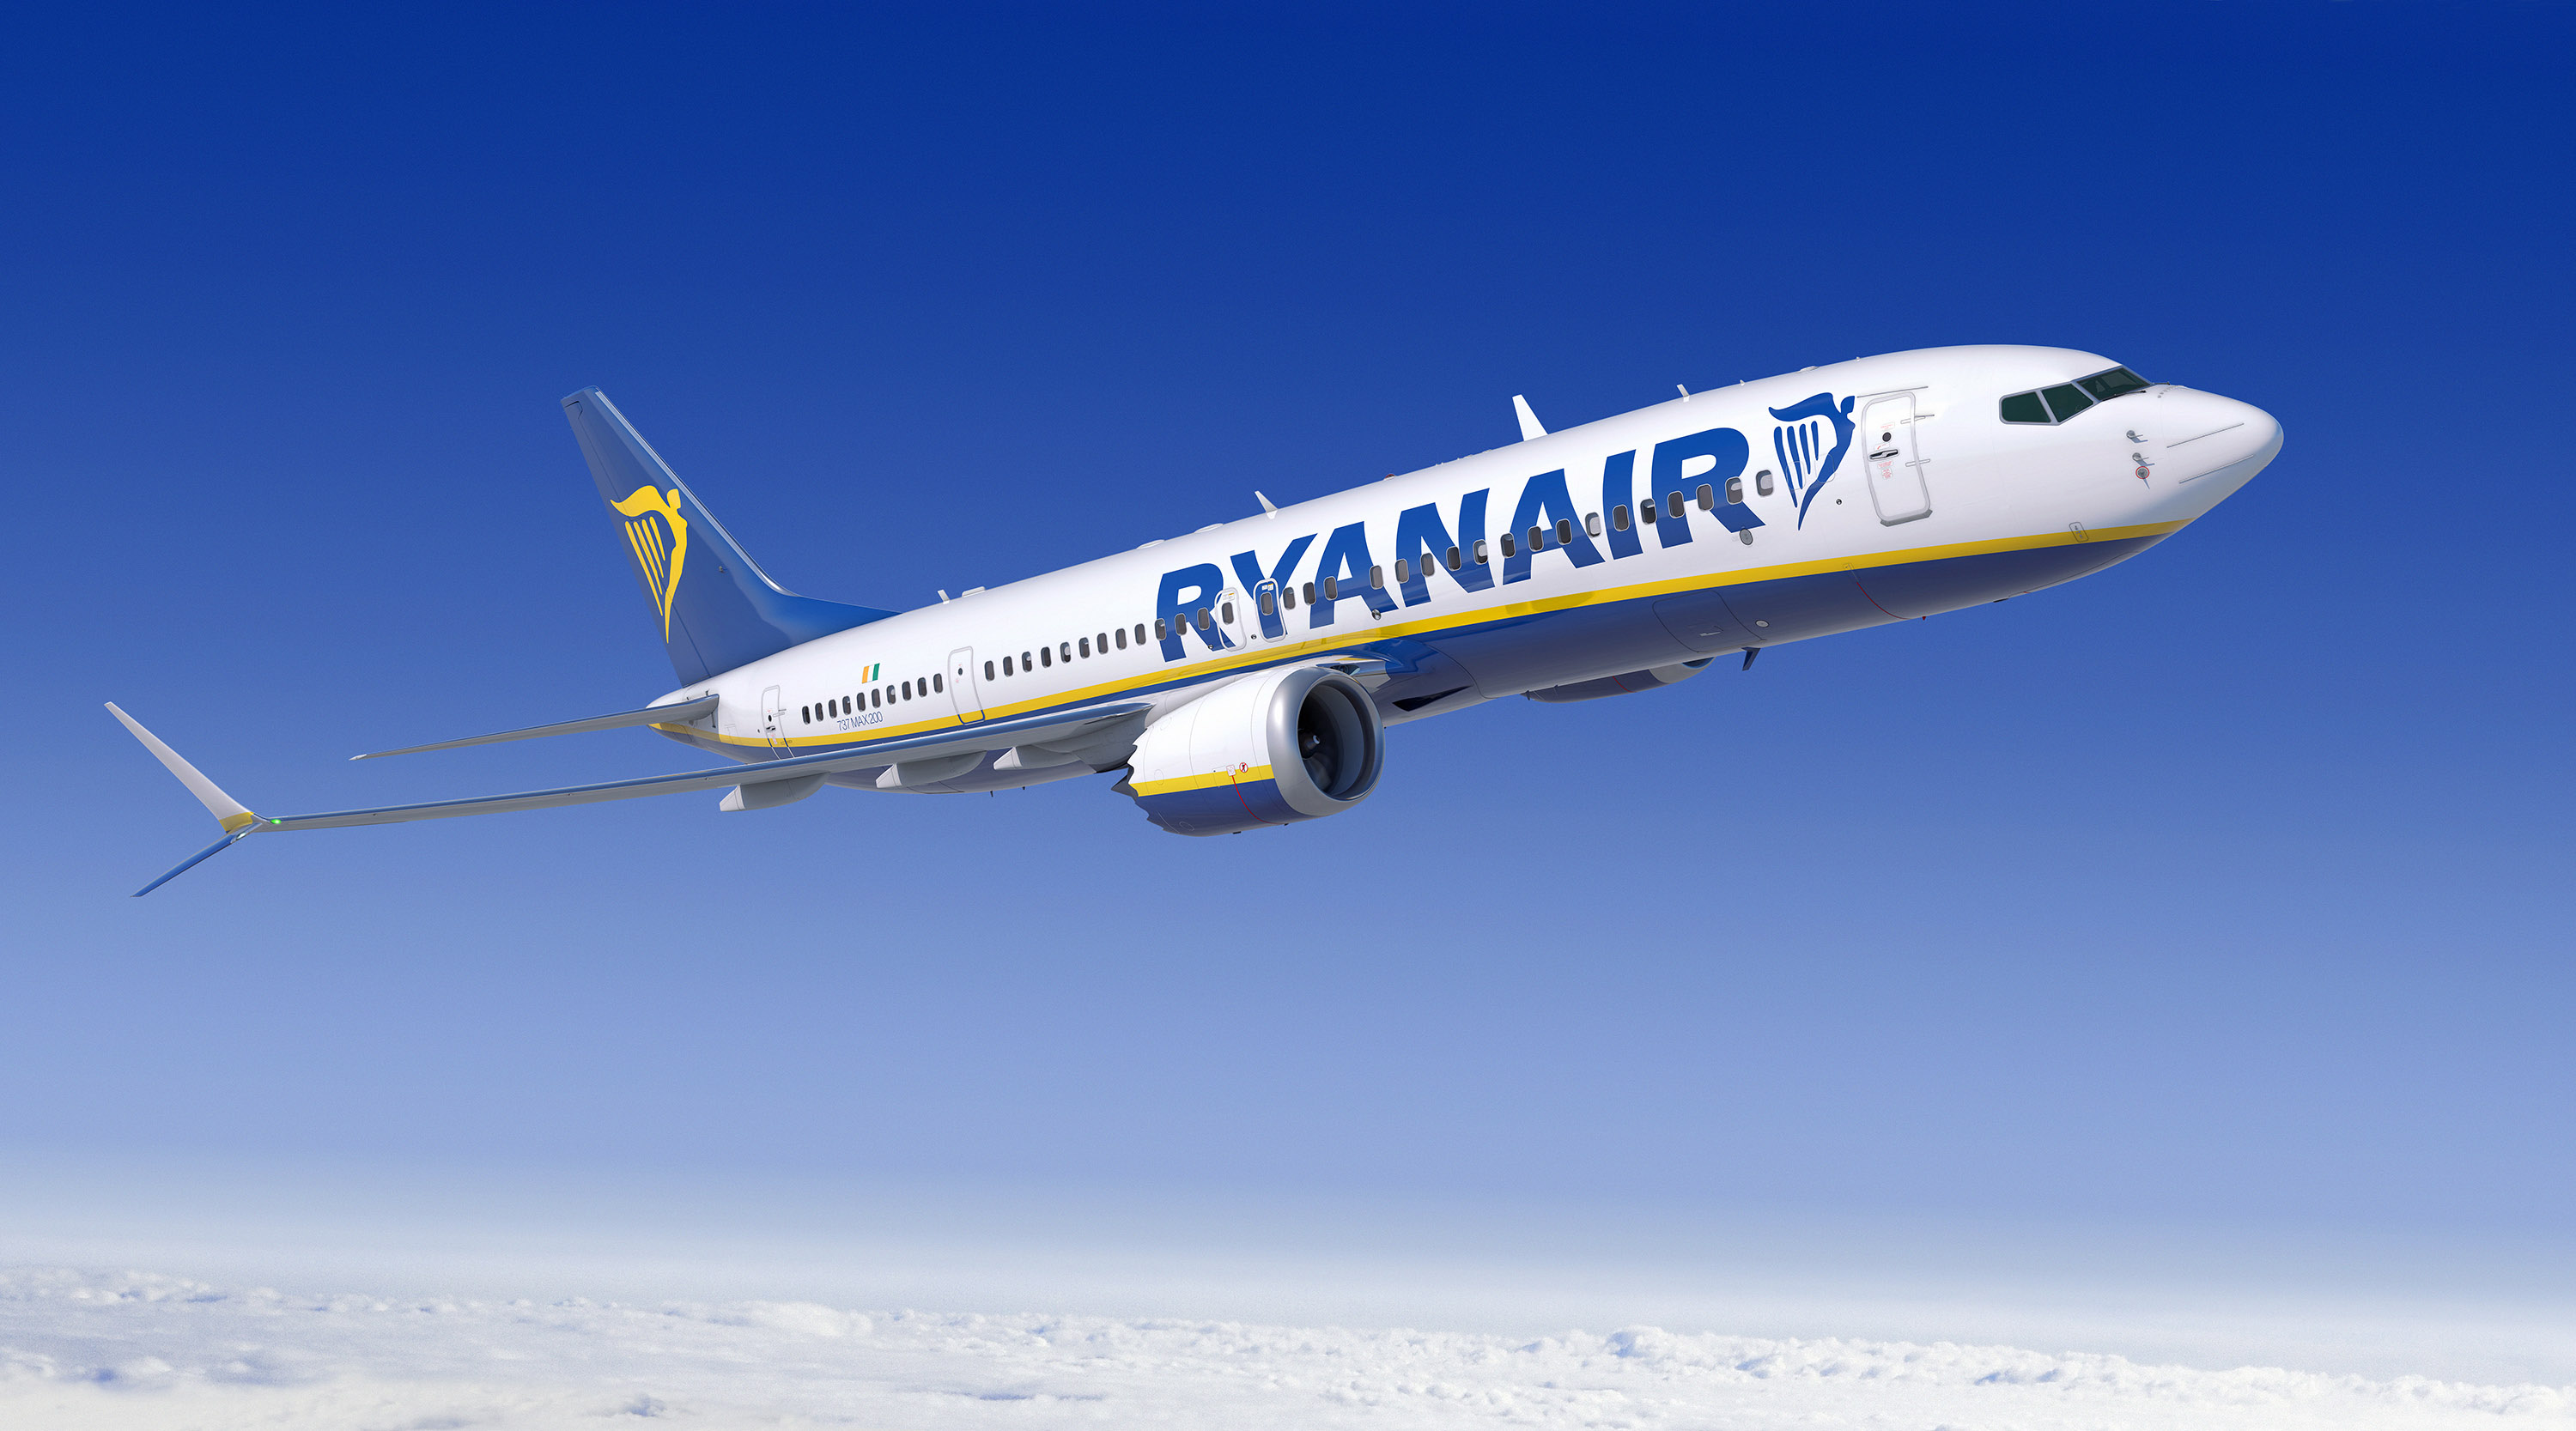 Grève irlandaise annulée, le dialogue reprend chez Ryanair